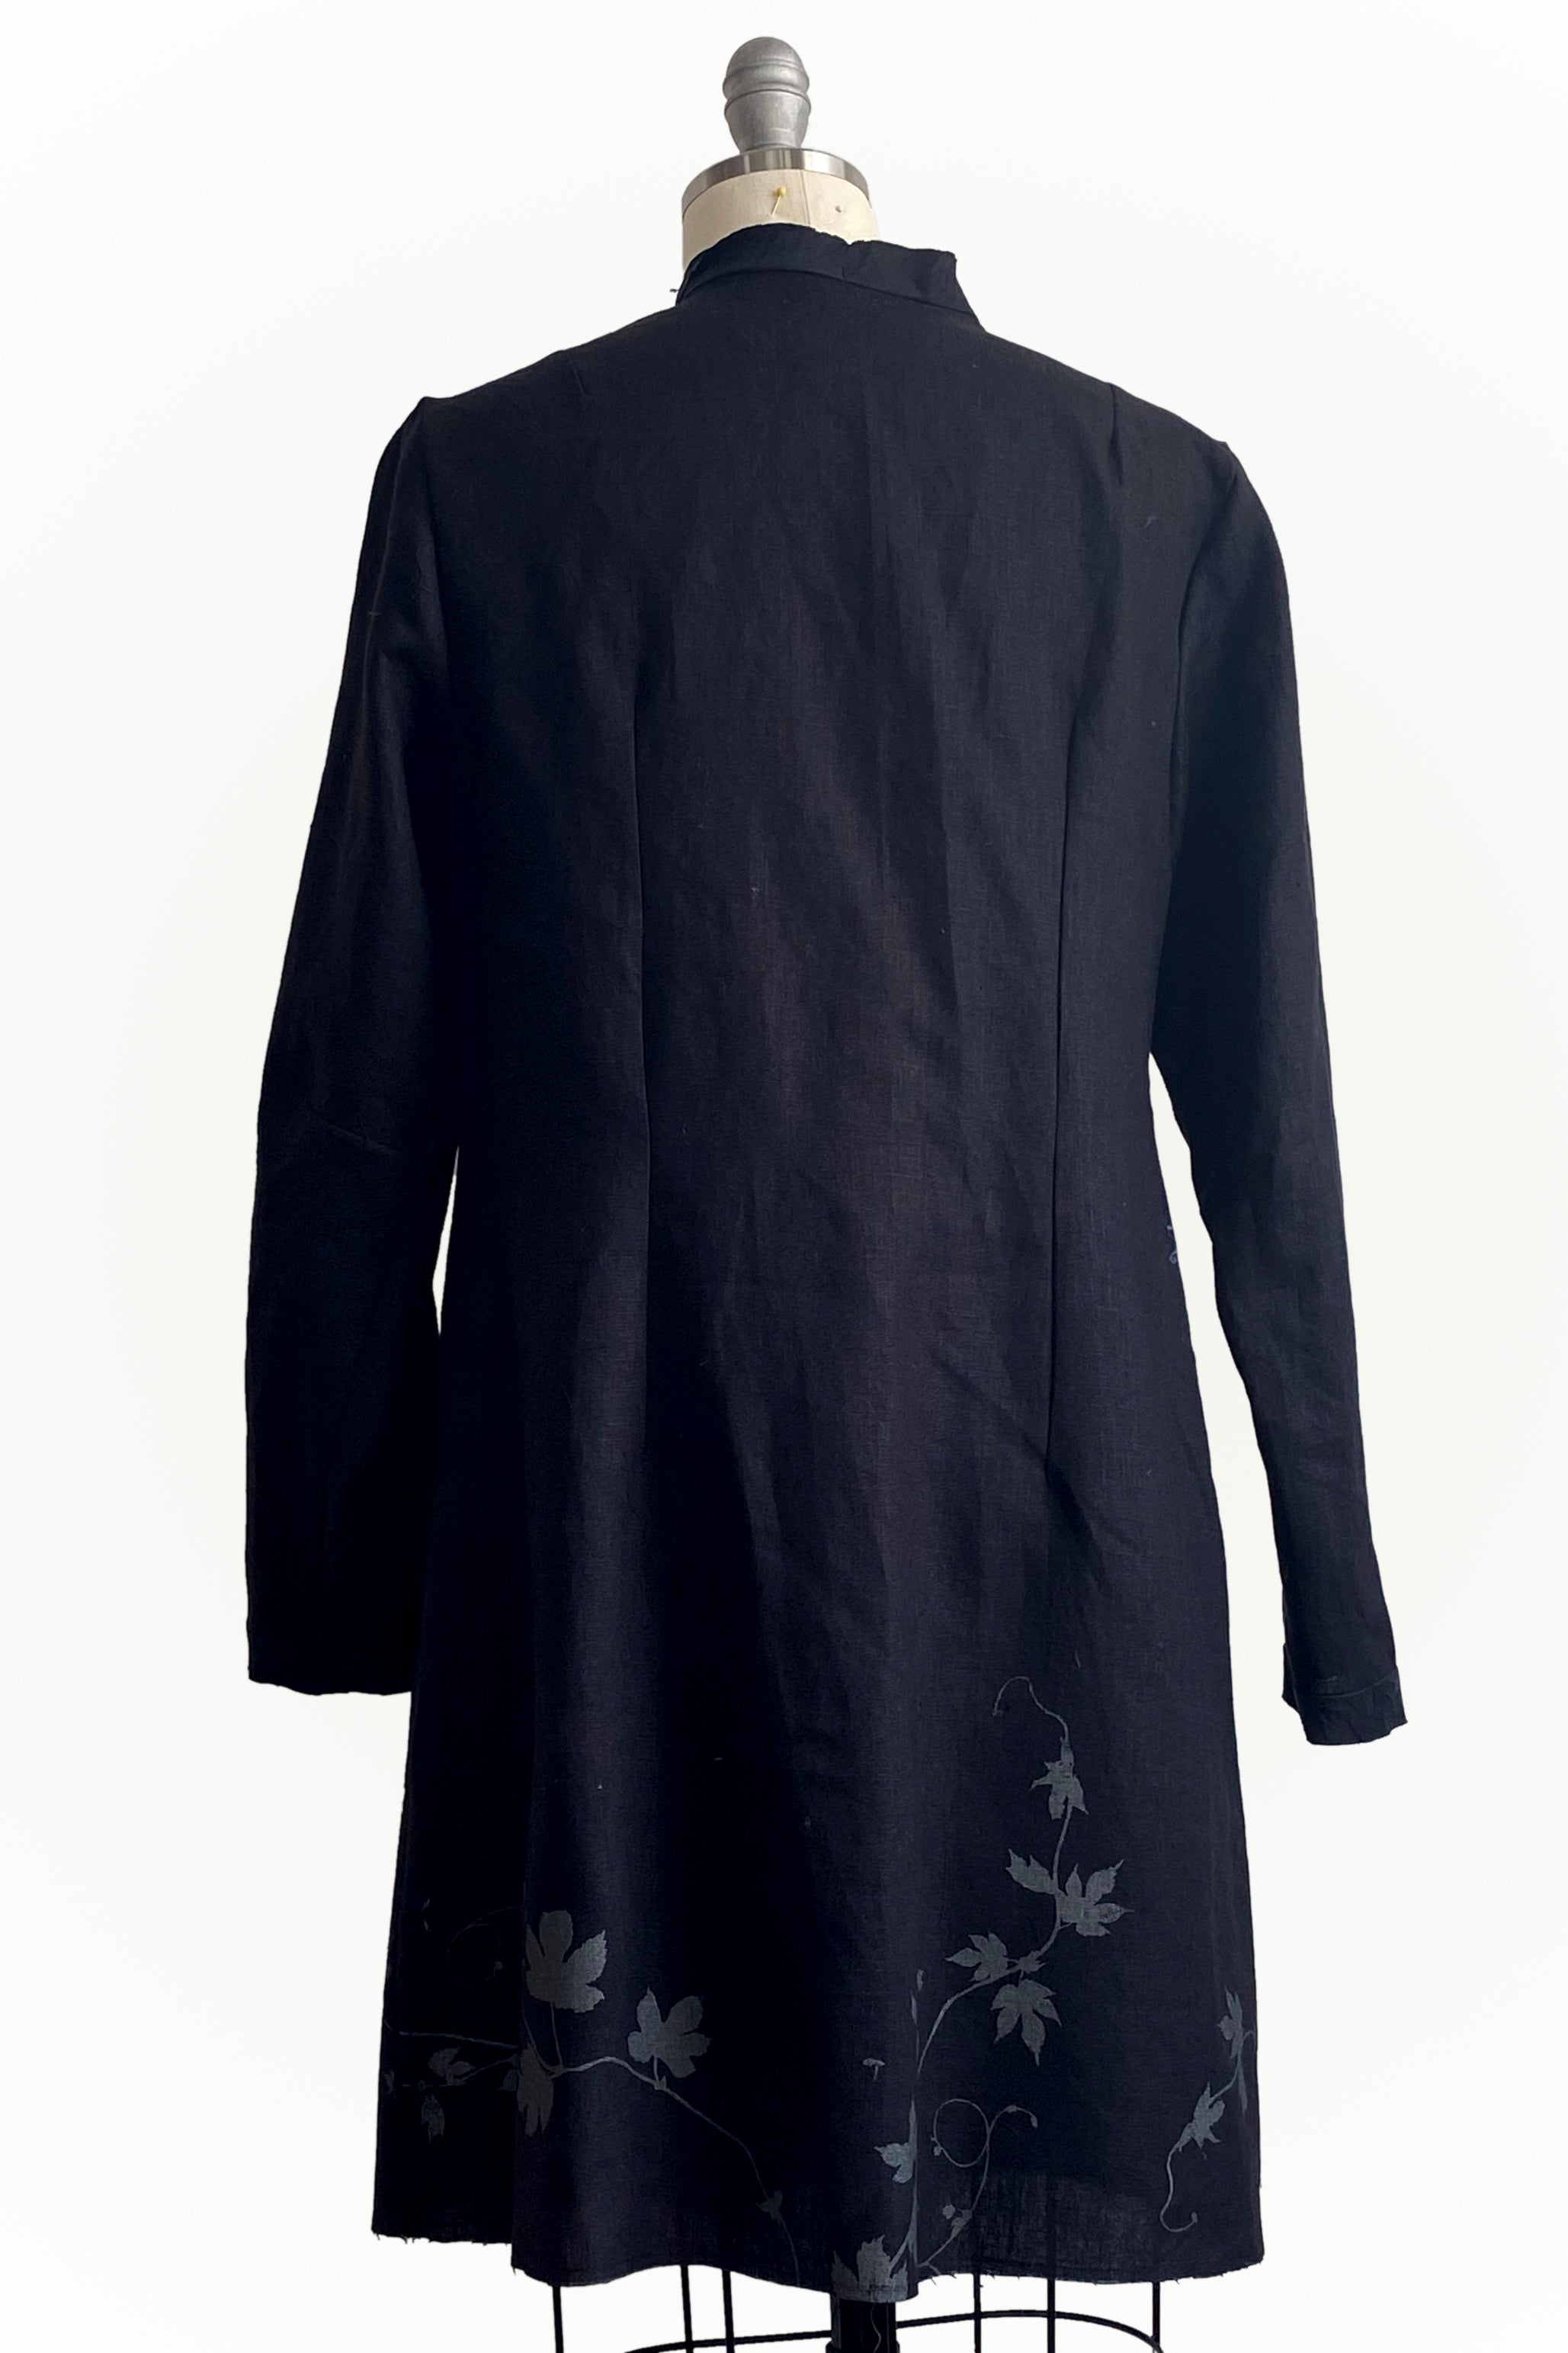 Hampton Coat Linen - Black w/ Vines Print - Small